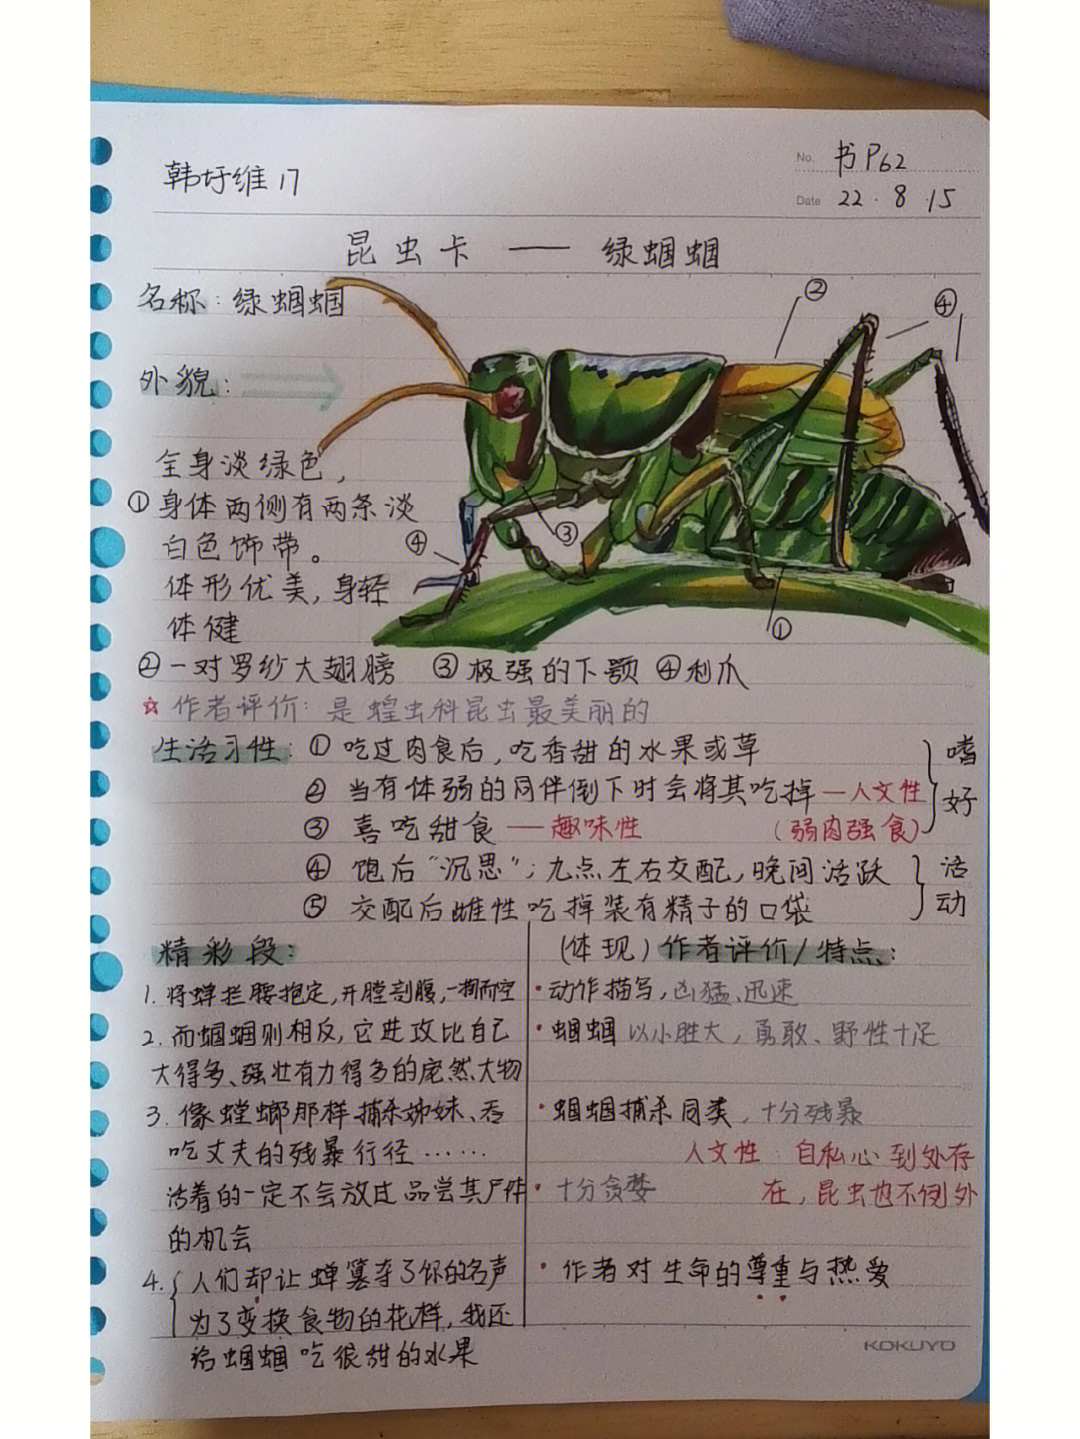 《昆虫记》昆虫资料卡图片